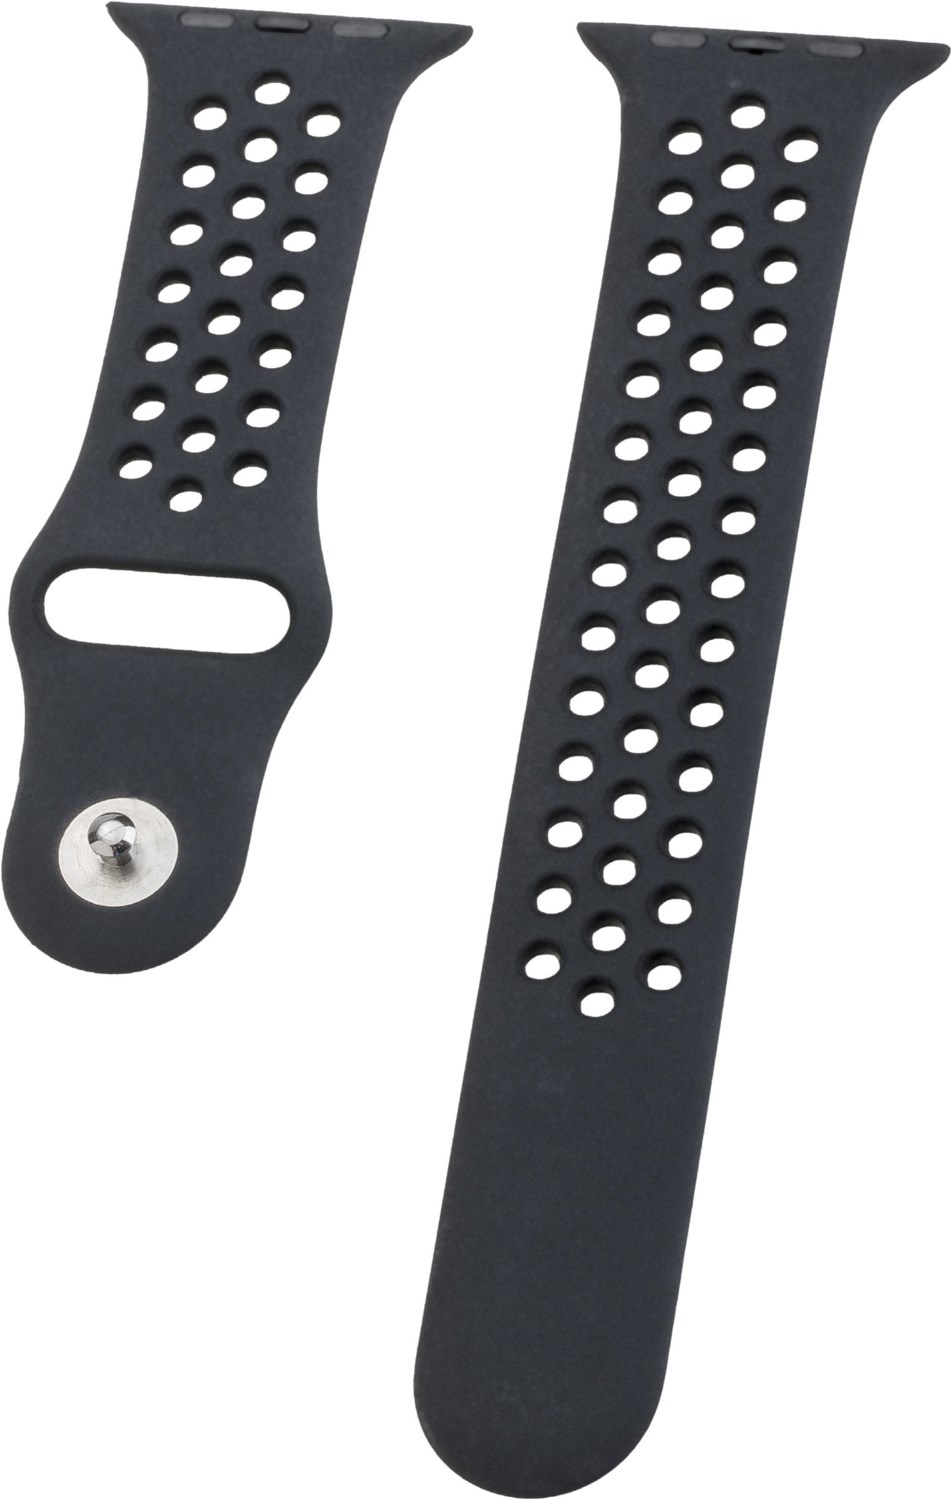 Watch Band Silikon für Apple Watch (44mm/42mm) dual black